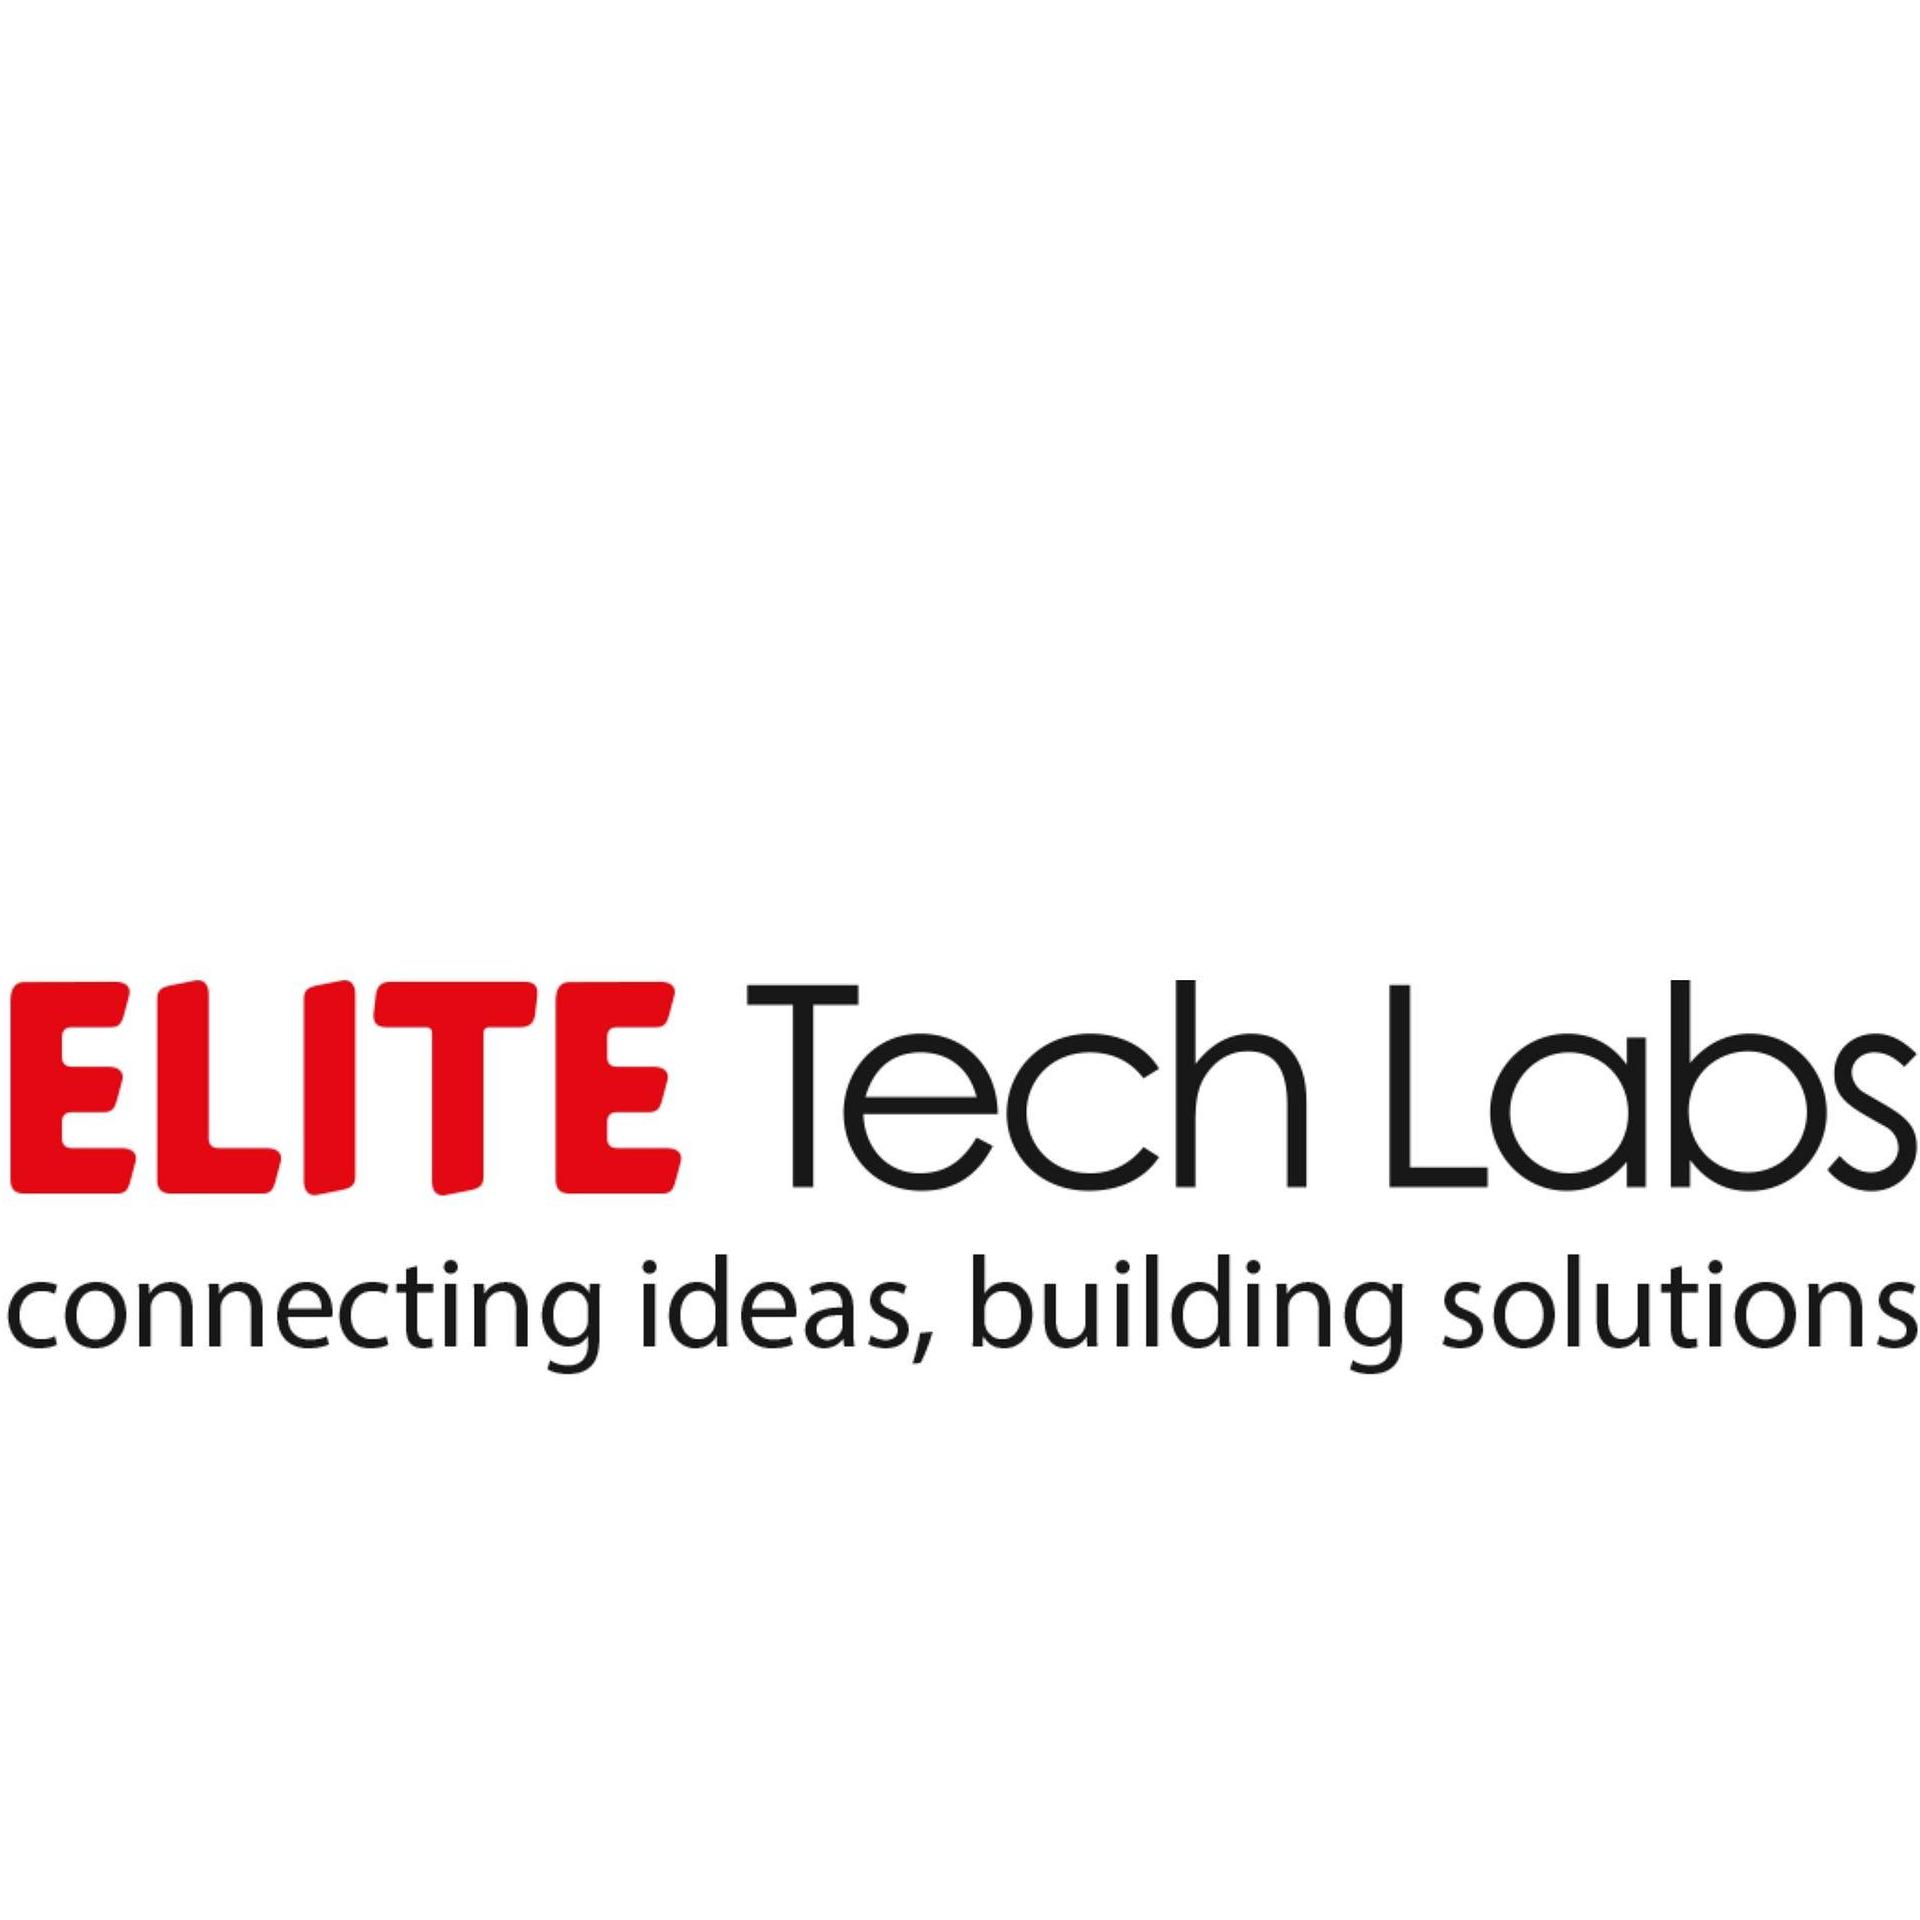 EliteTech Labs